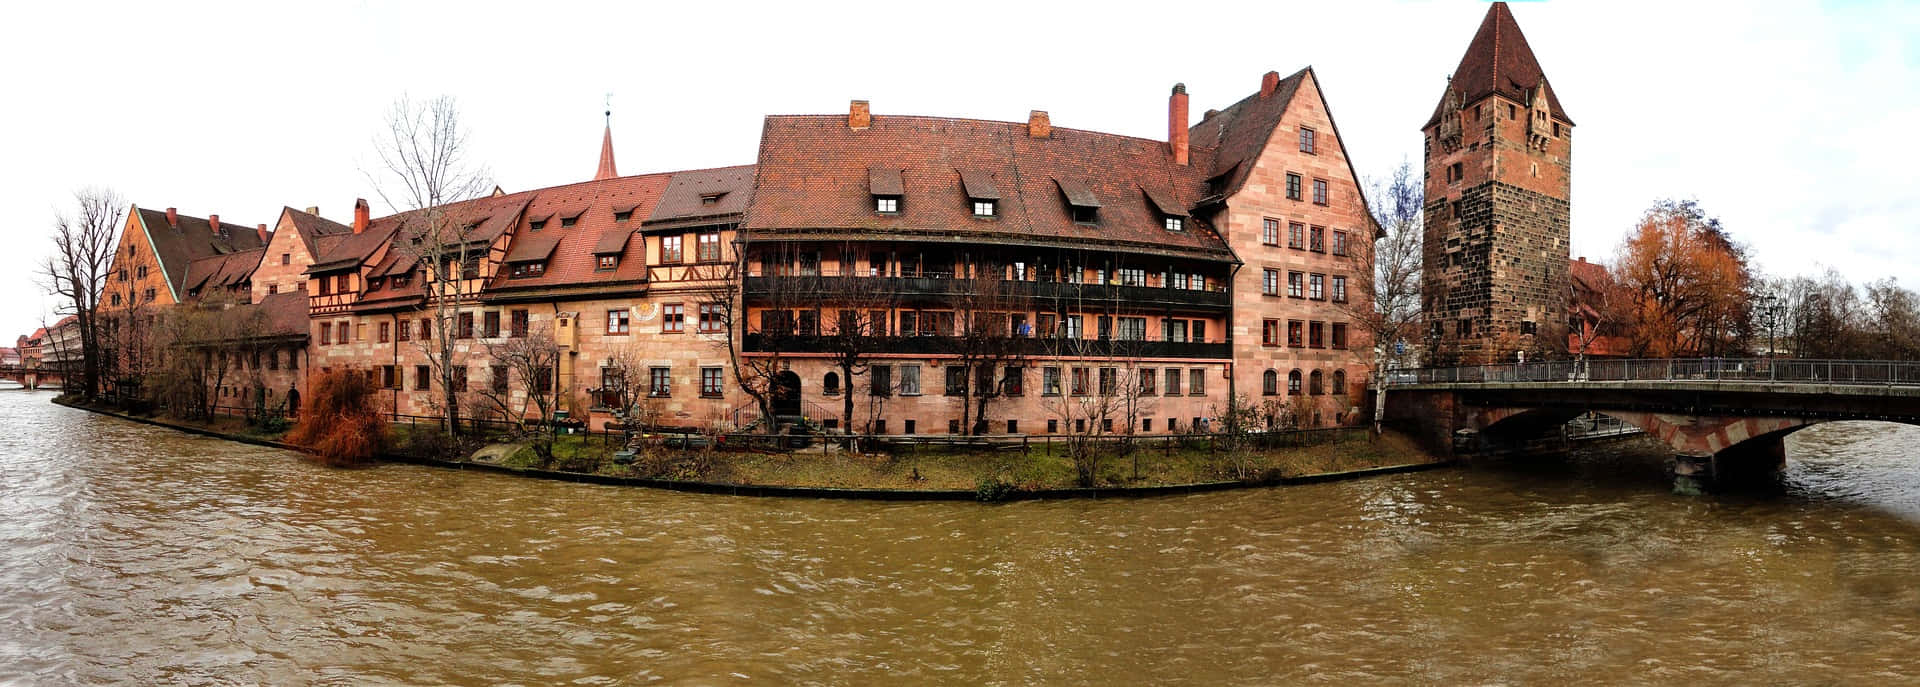 Klassischesgebäude An Flussufer - Panoramabild